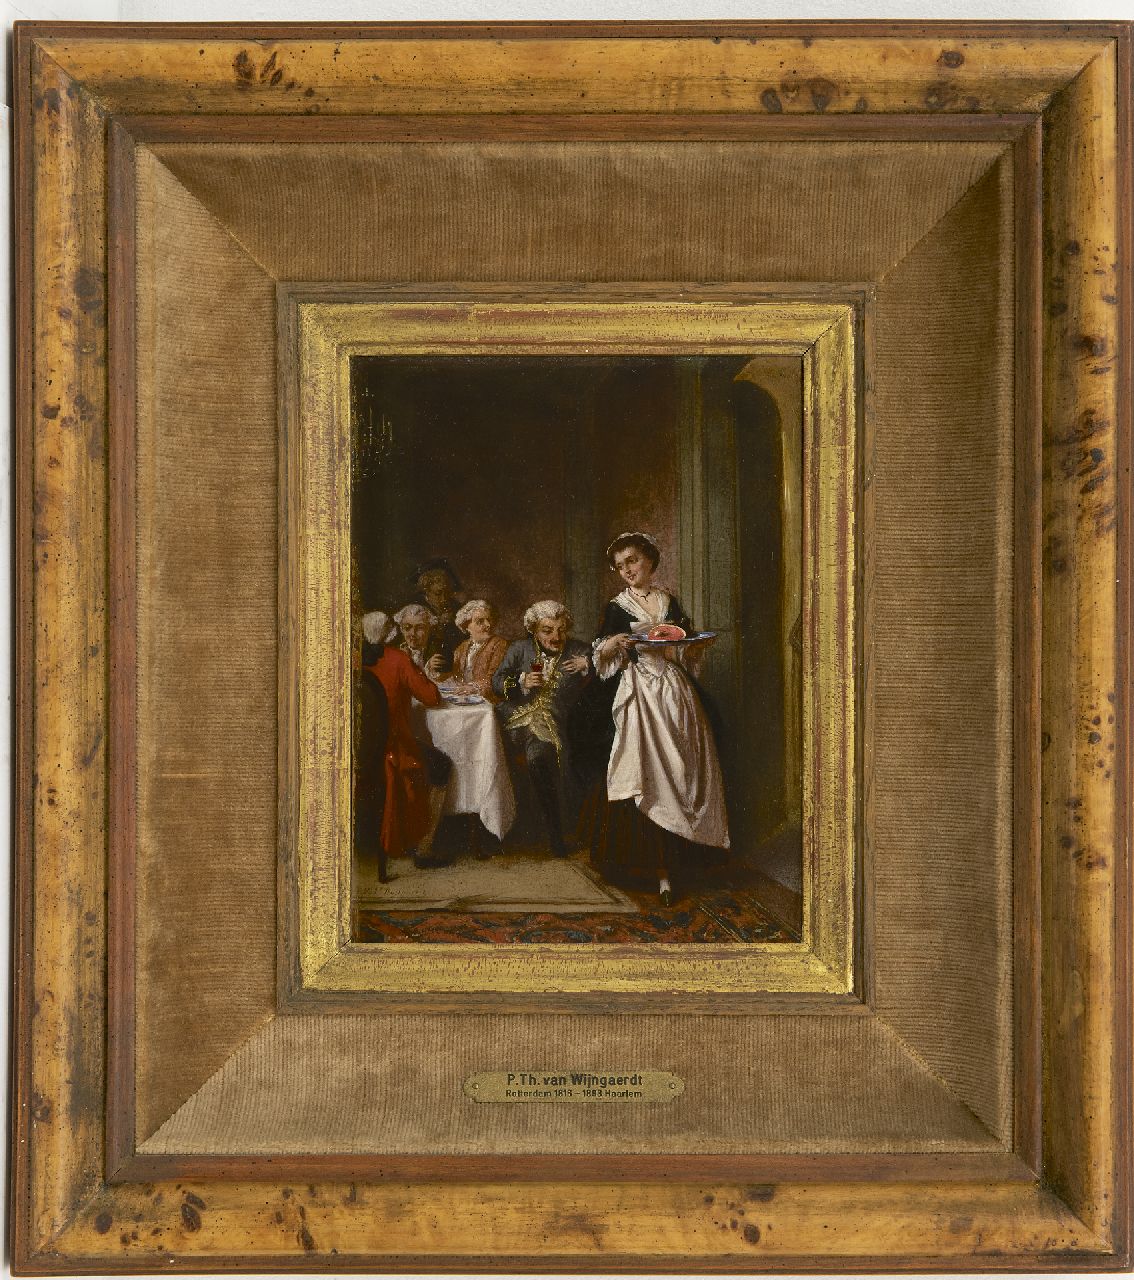 Wijngaerdt (de oude) P.T. van | Petrus Theodorus van Wijngaerdt (de oude) | Paintings offered for sale | A tidbit, oil on panel 20.0 x 15.4 cm, signed l.l.